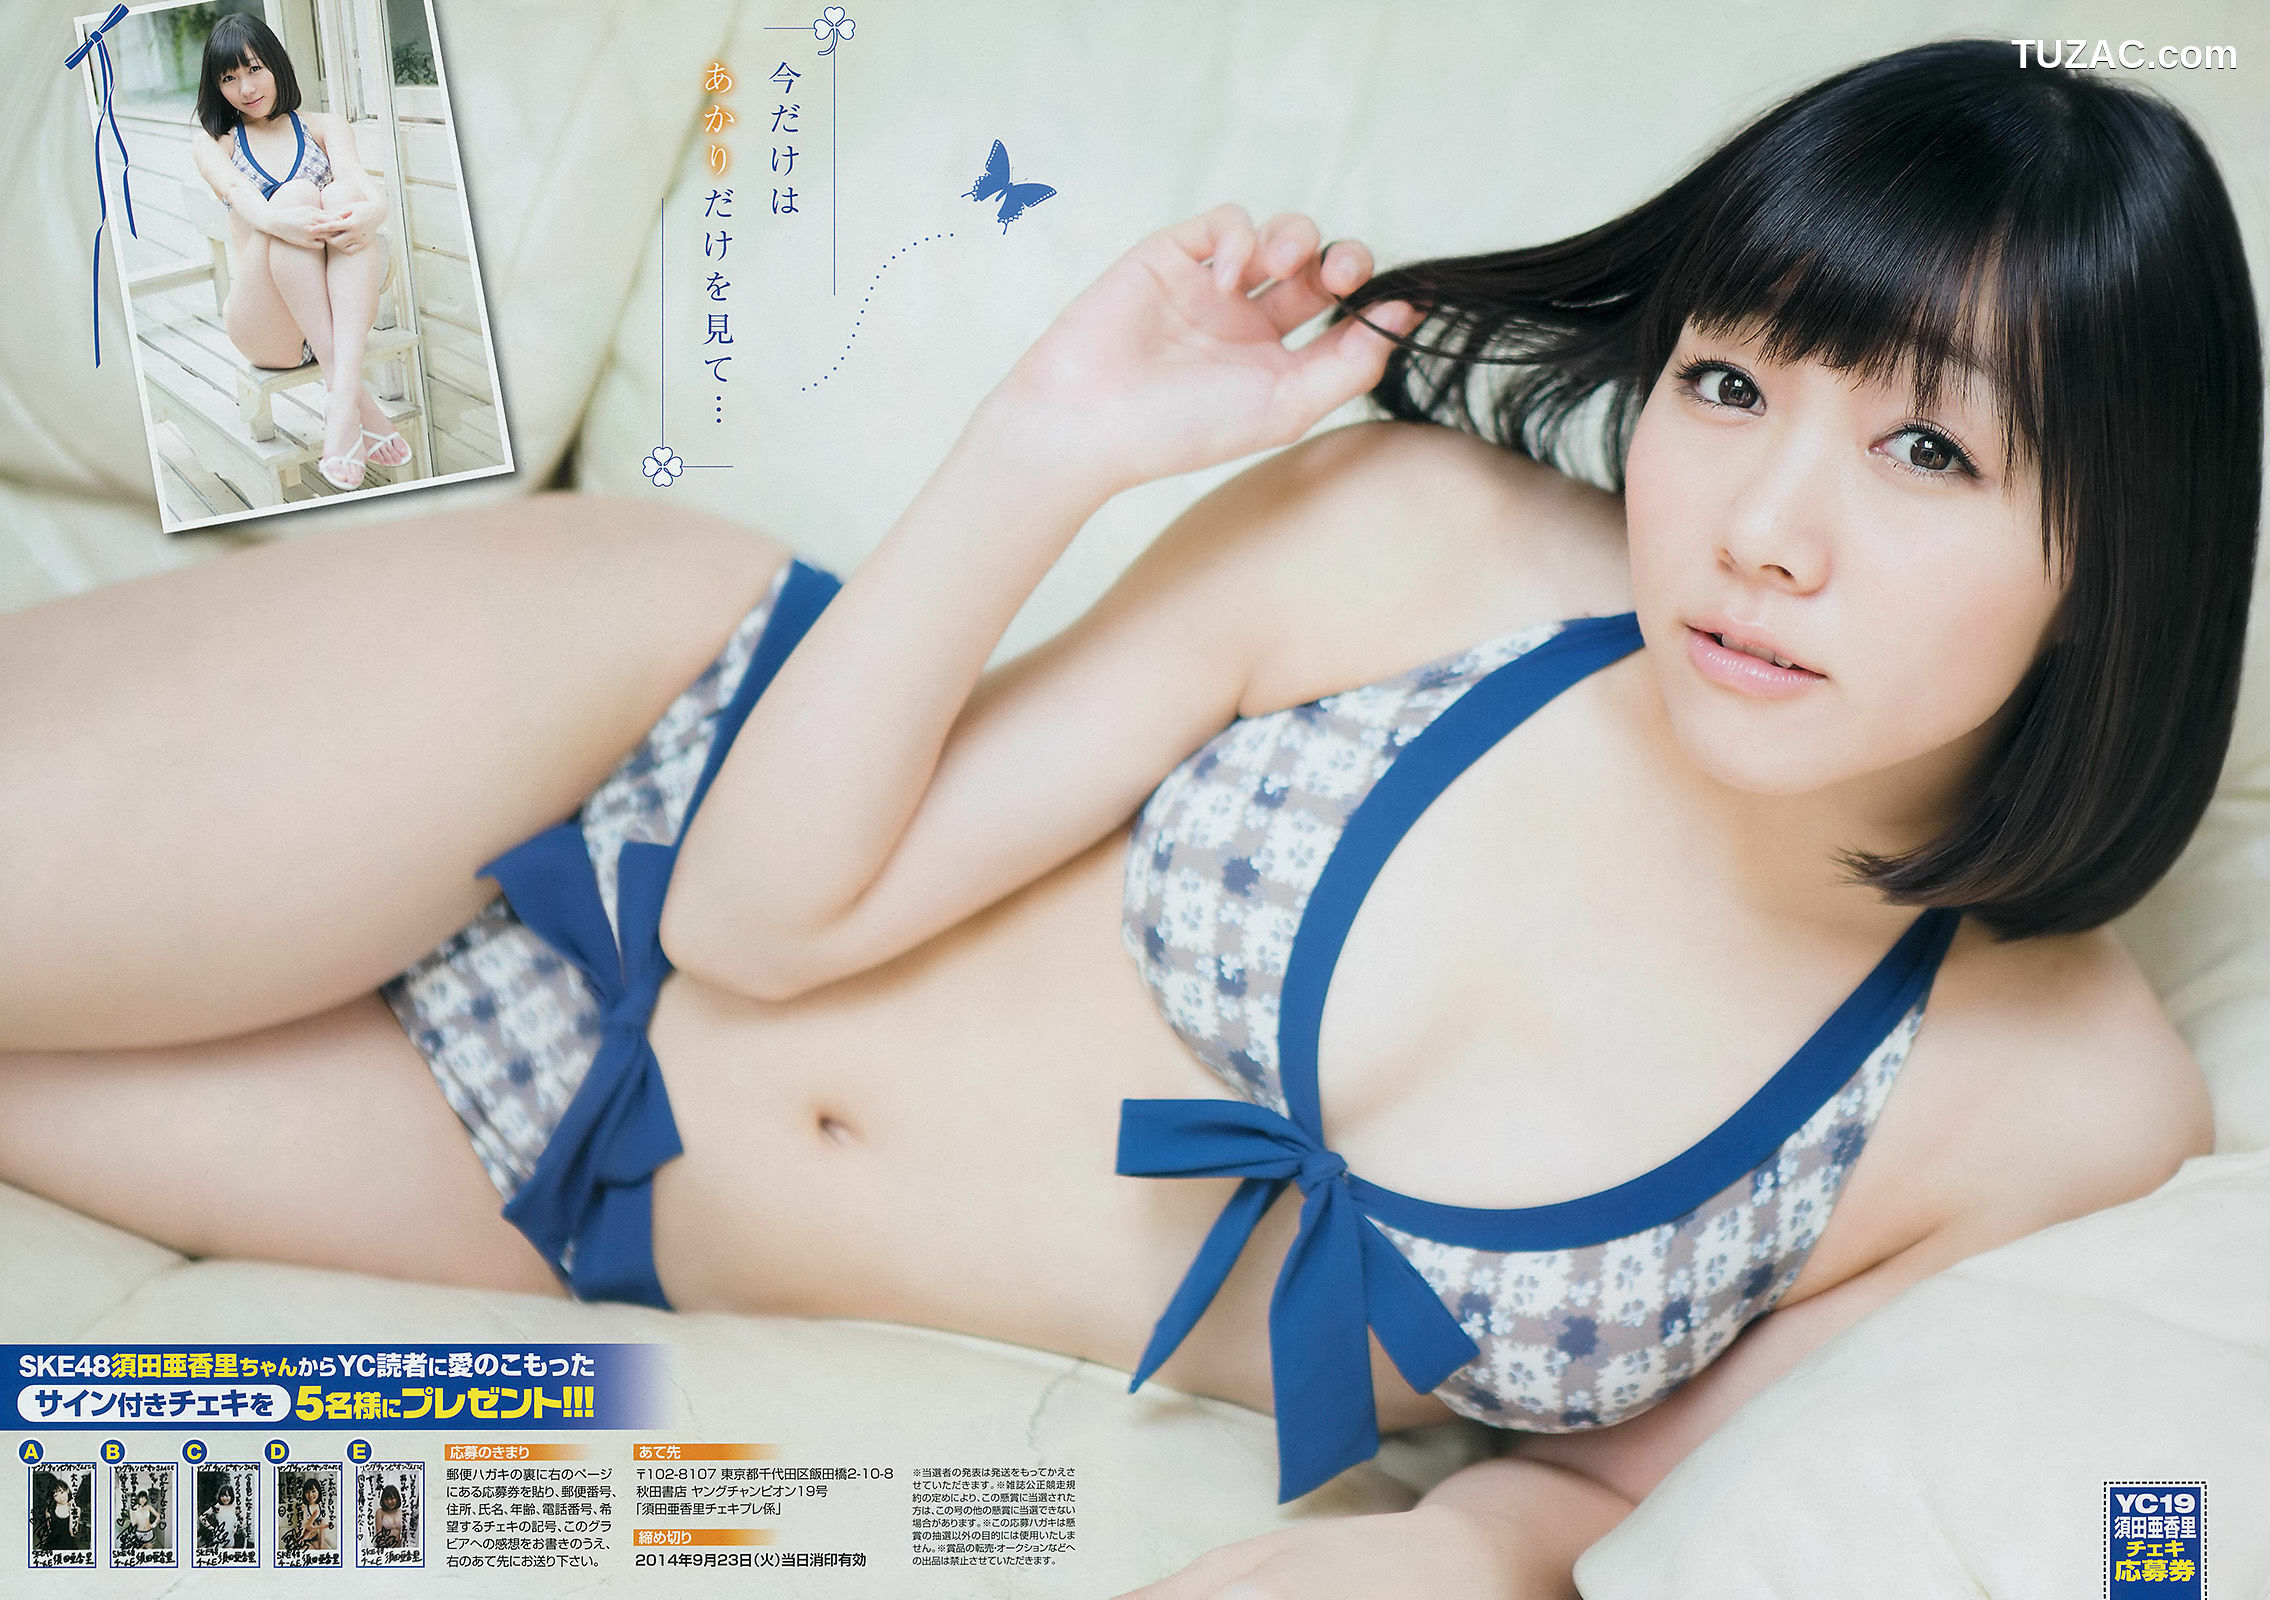 Young Champion杂志写真_ 須田亜香里 葉加瀬マイ 2014年No.19 写真杂志[14P]